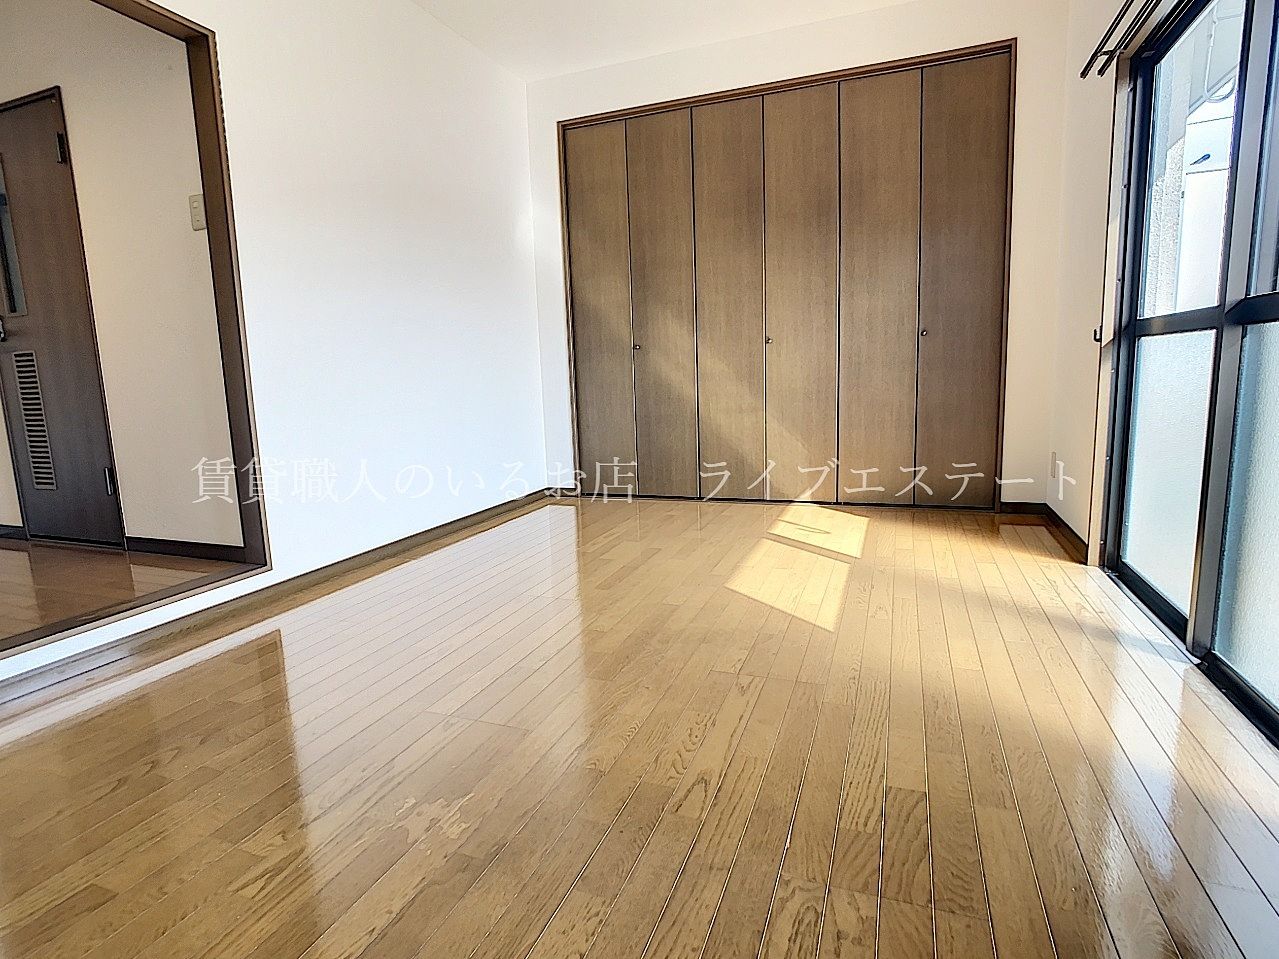 綺麗な長方形のお部屋は家具が配置しやすく使いやすいです